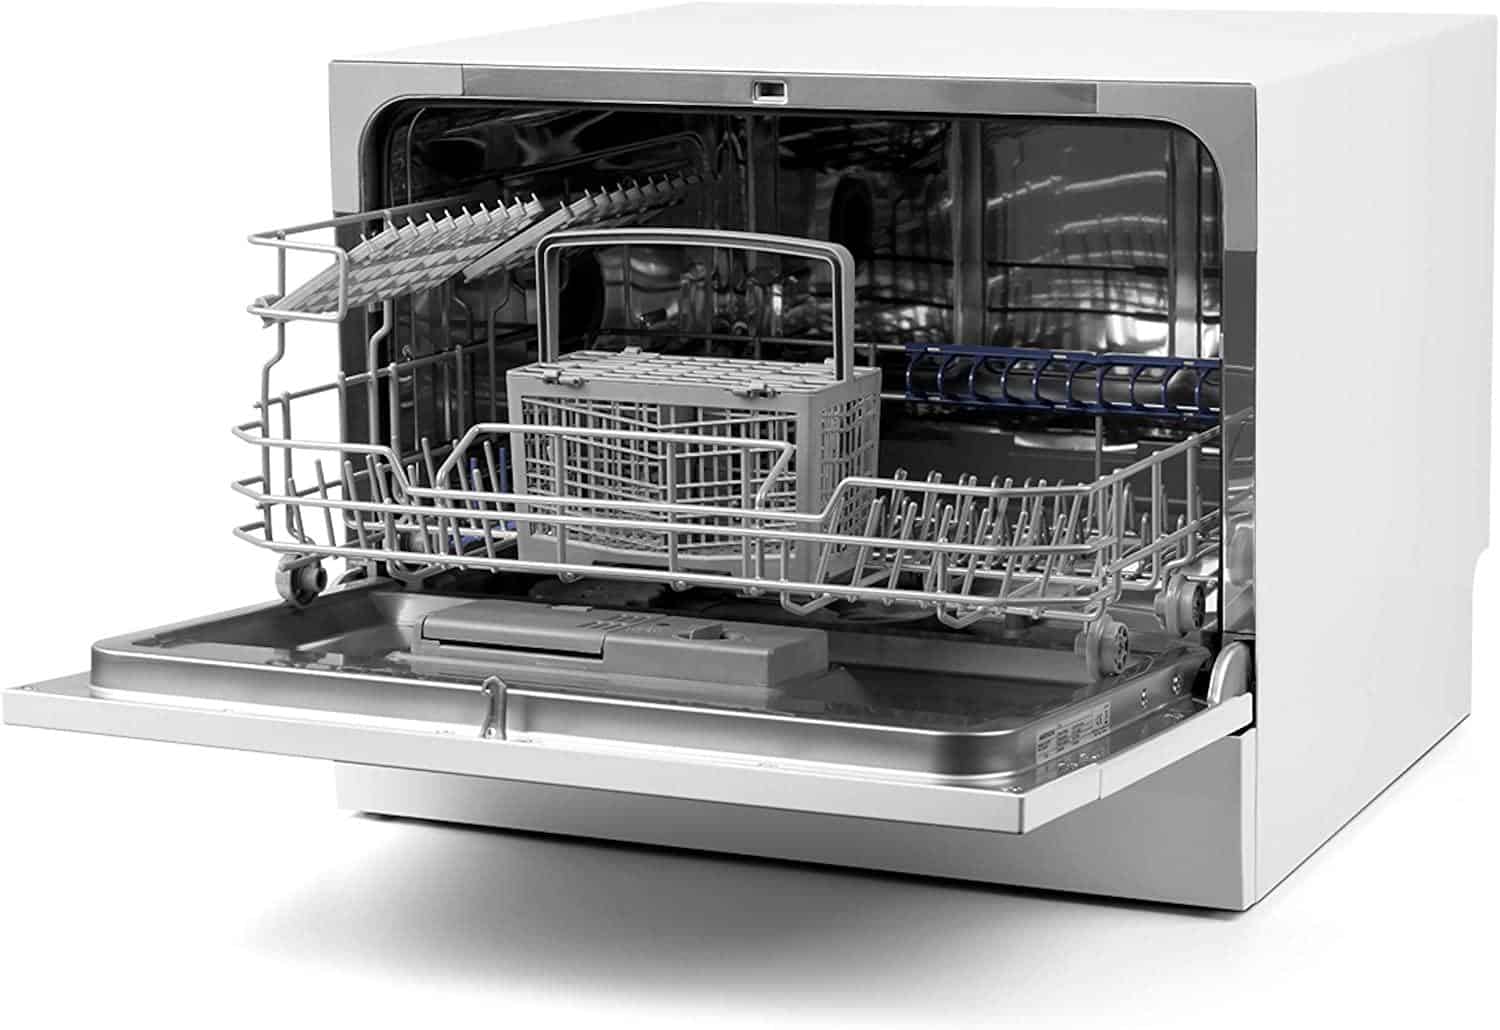 Днс купить посудомоечную встраиваемую. Компактная посудомоечная машина Medion MD 37227 из Германии. Посудомоечная машина Cube c537+dgt50. Встраиваемая посудомоечная машина Neff s853hkx50r. Посудомоечная машина MS/easy 50.